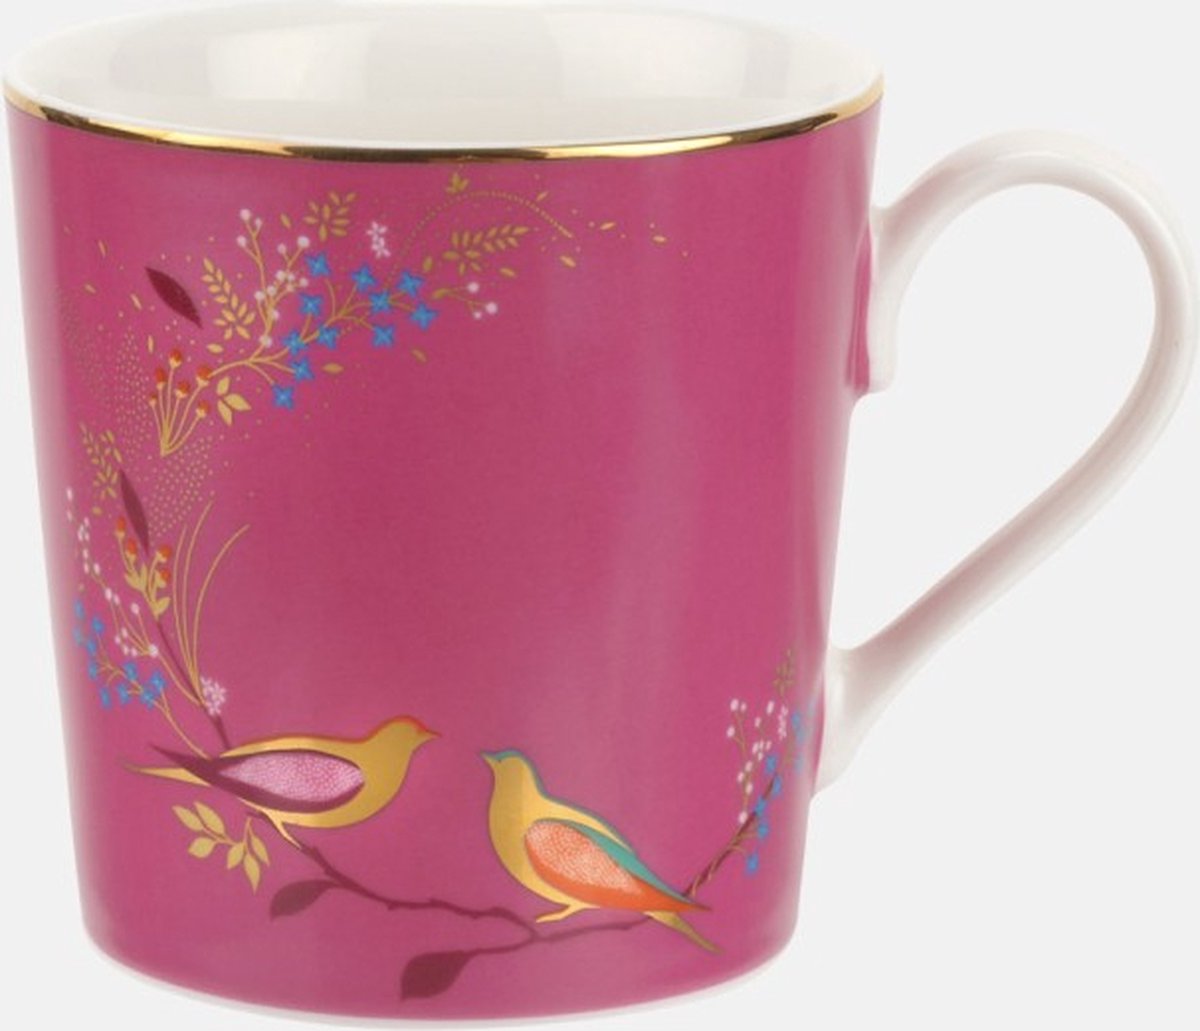 Sara Miller London - Chelsea Mug Pink - Mok - Roze - Vogels - Ø 9,8 cm, H 10,6 cm, 0,34 l